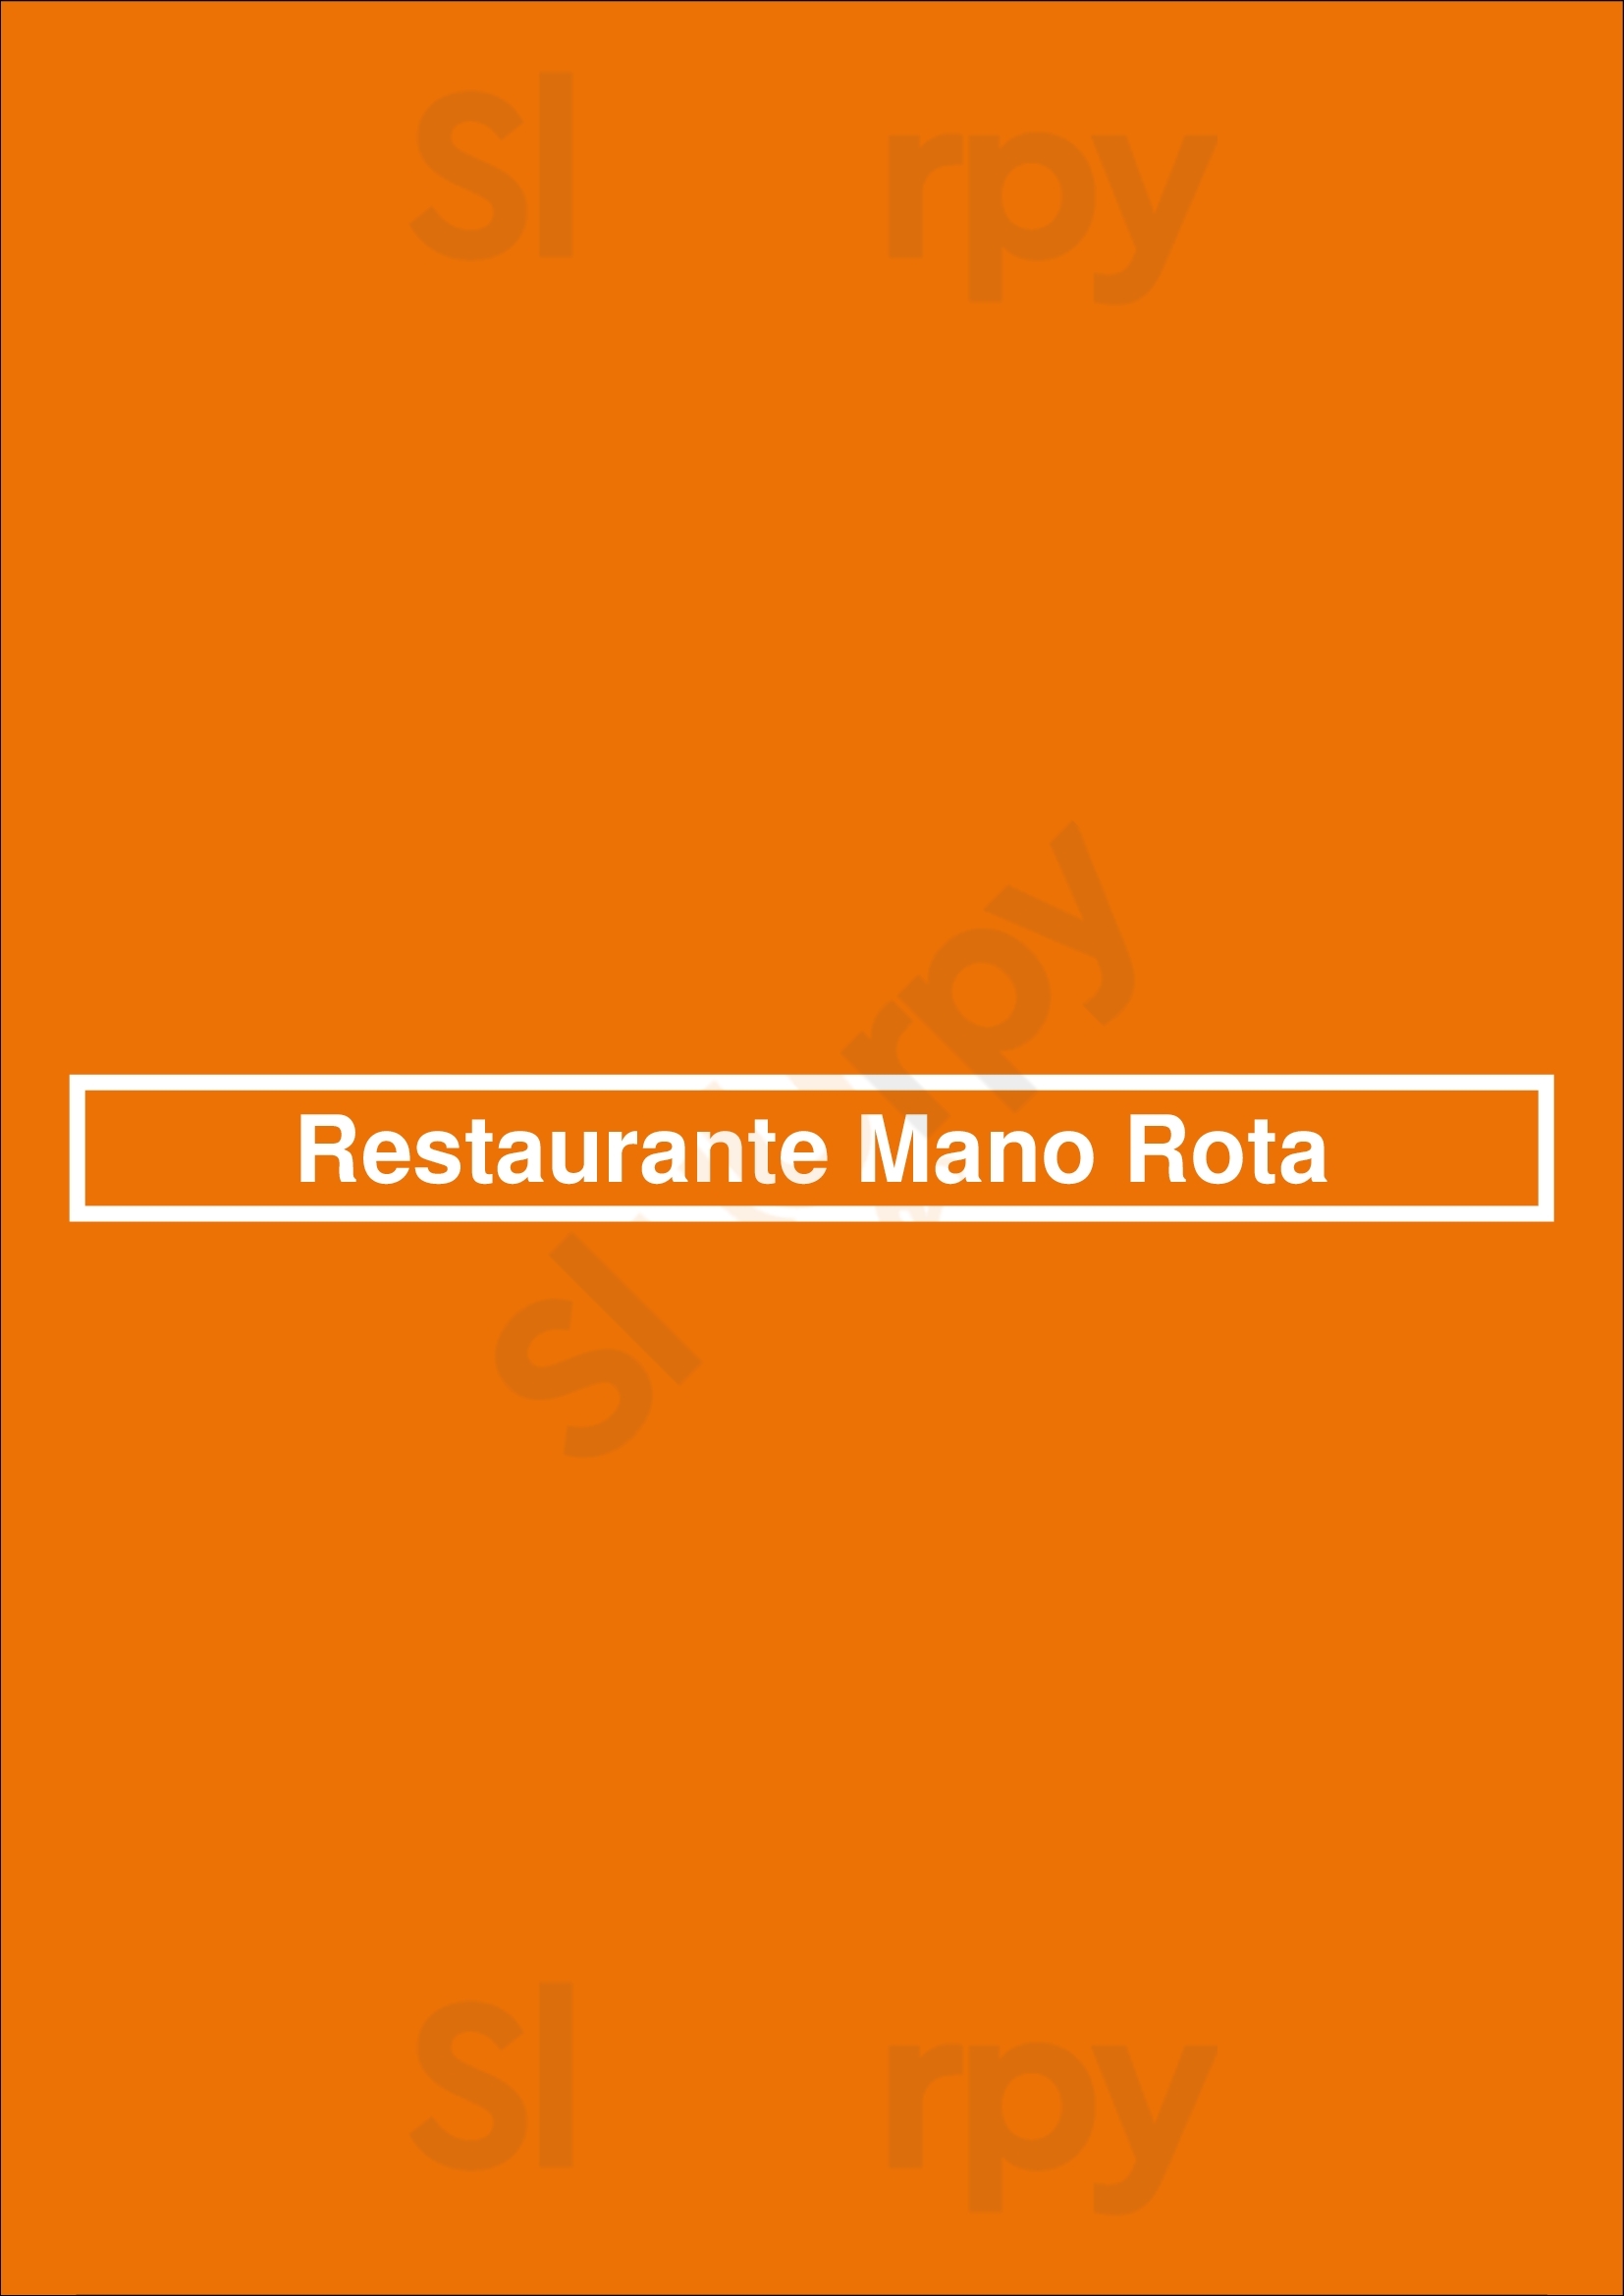 Mano Rota Restaurante En Barcelona Fusion Cocina Japonesa Y Peruana Barcelona Menu - 1